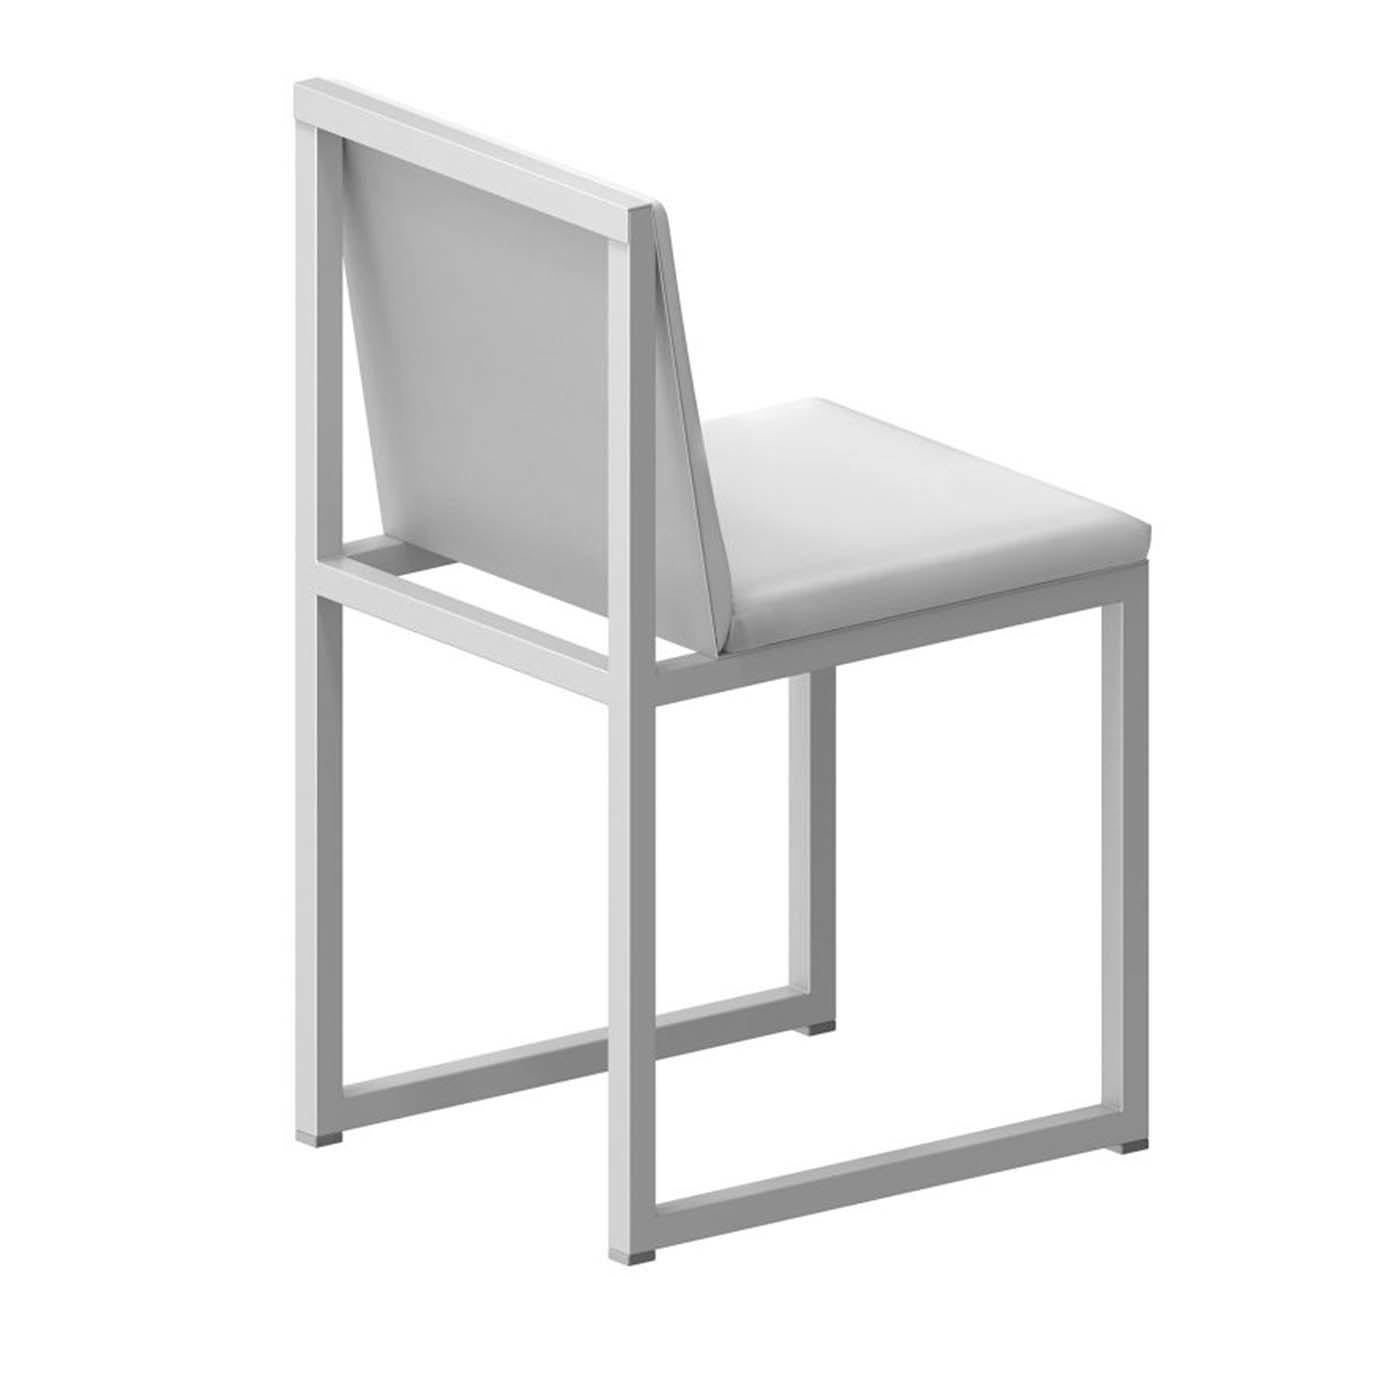 Convenant aussi bien aux repas de tous les jours qu'aux occasions spéciales, cette chaise exclusive est construite avec un cadre géométrique ouvert en tubes d'acier carrés (25 x 25 mm) qui lui donne un aspect minimaliste et aérien. L'assise et le